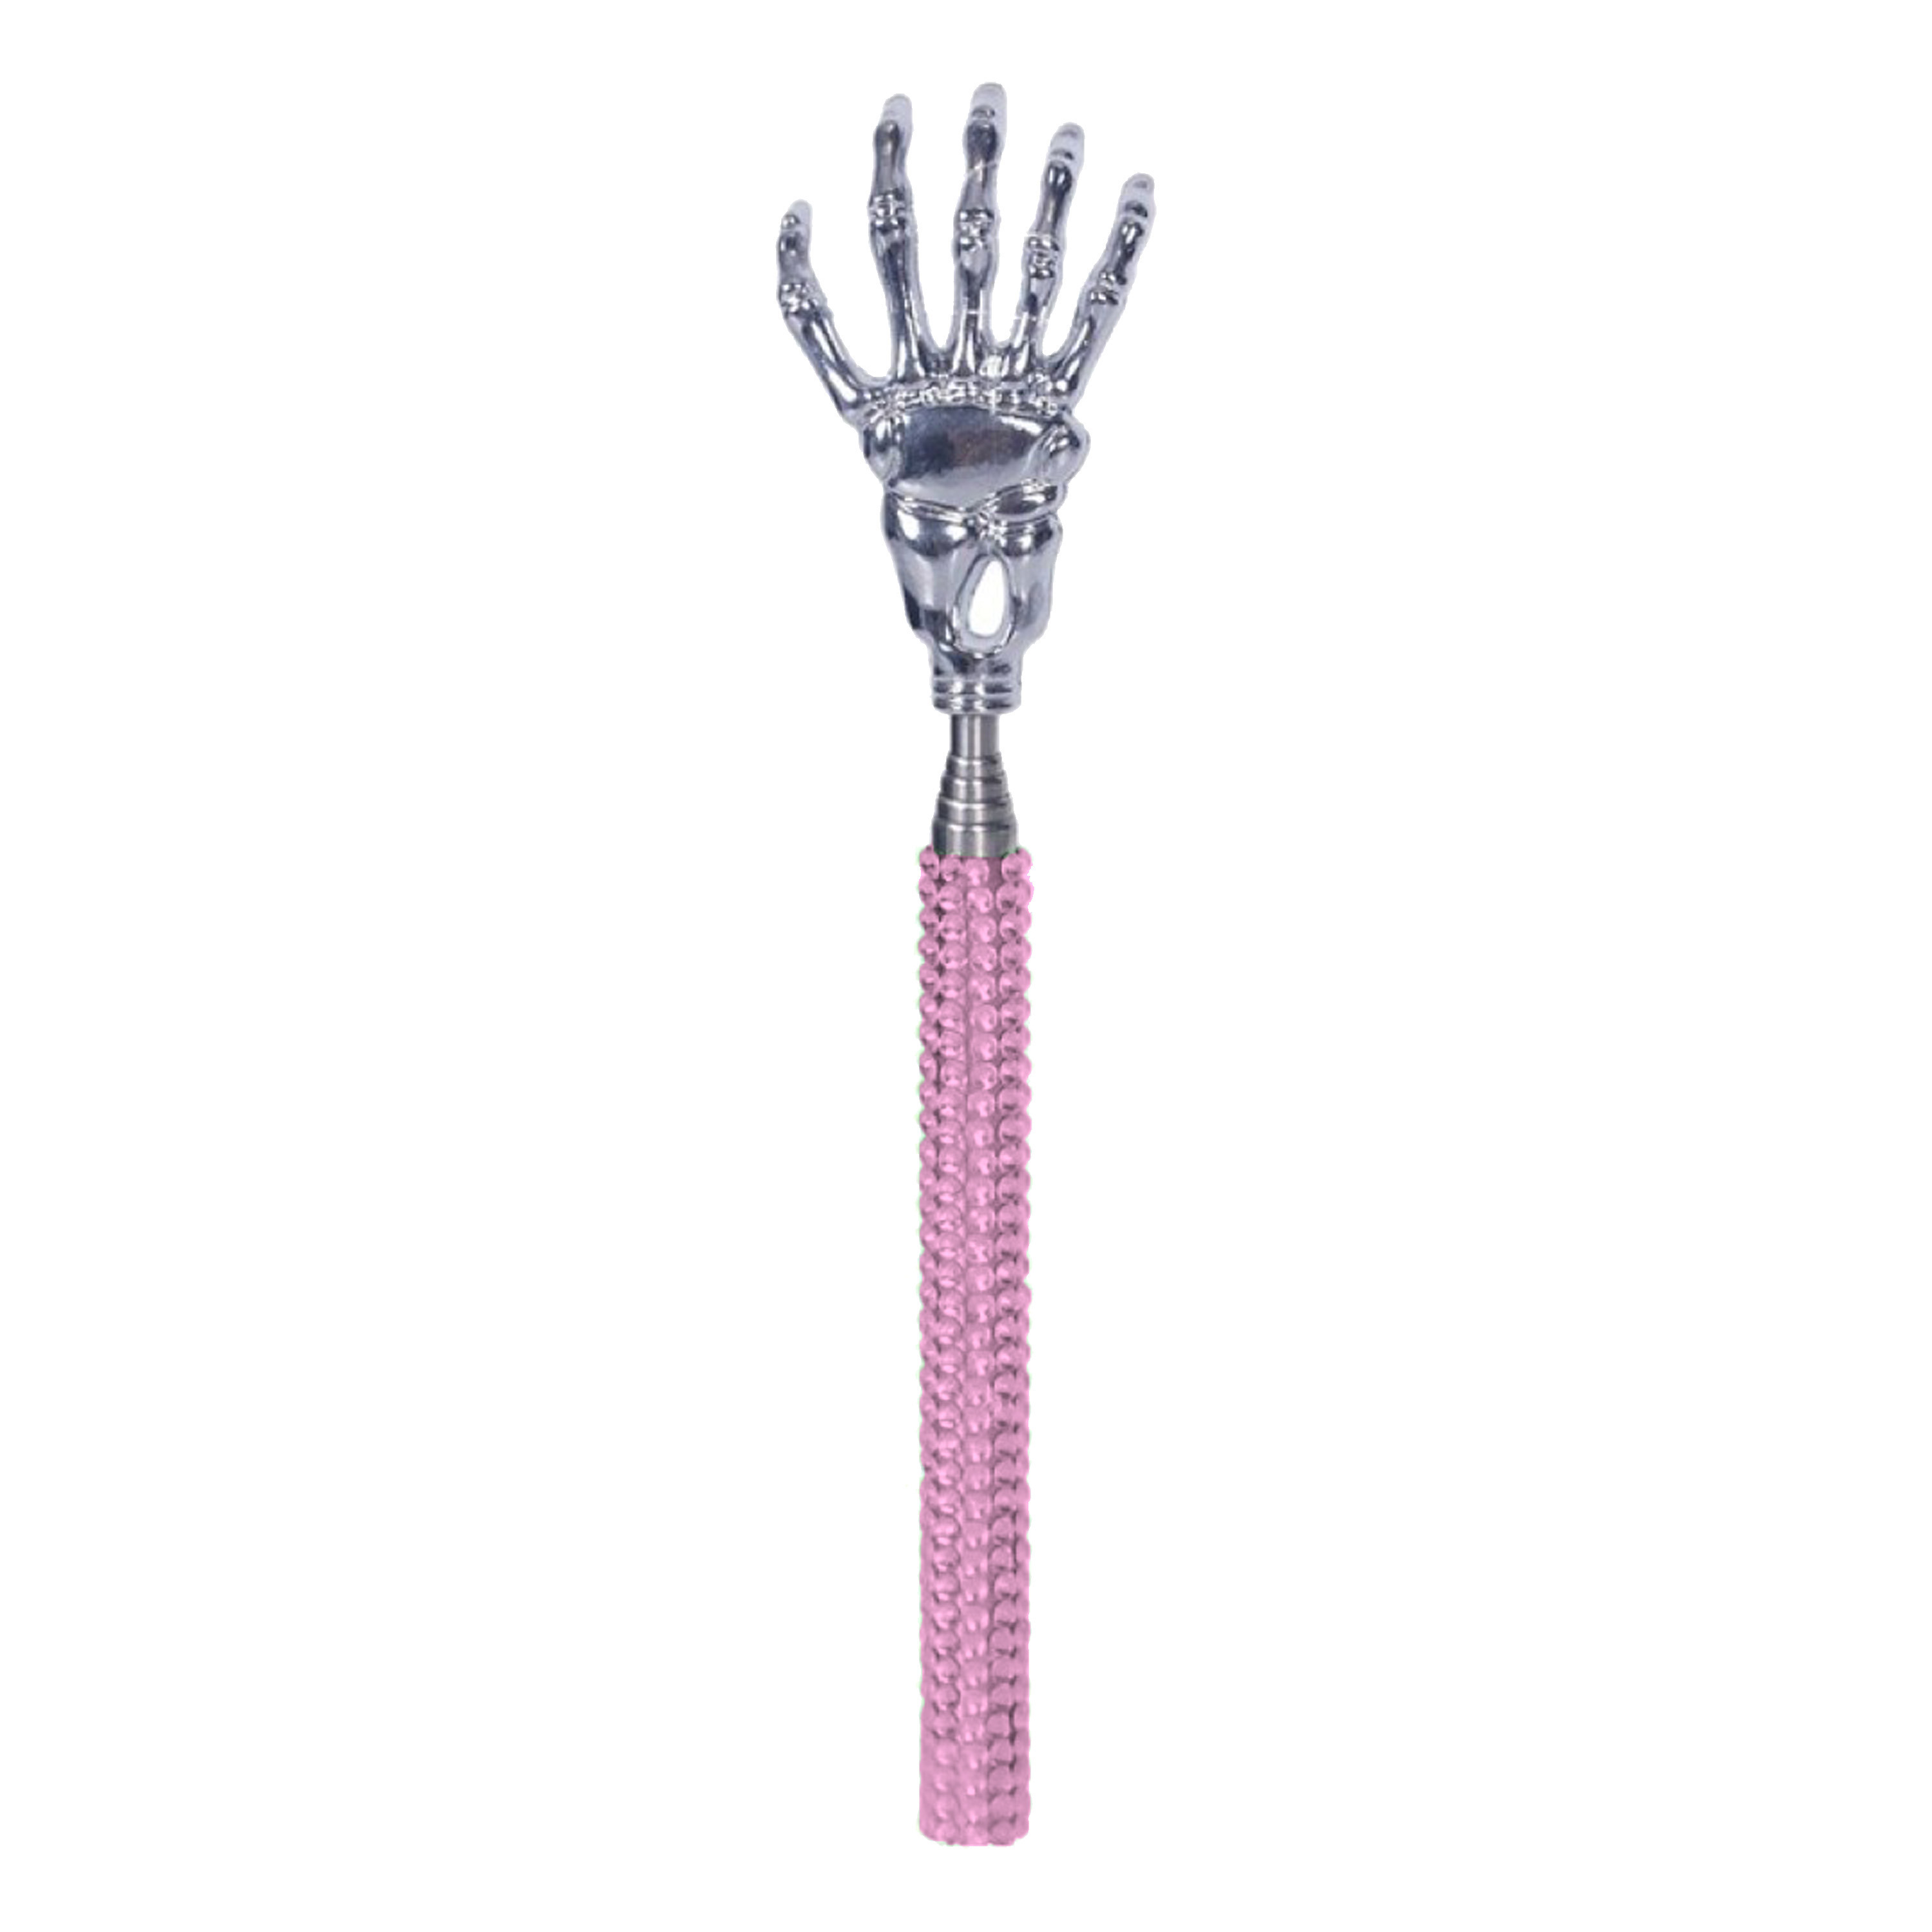 Rugkrabber uitschuifbaar roze skelet handje diamanten massage krabber